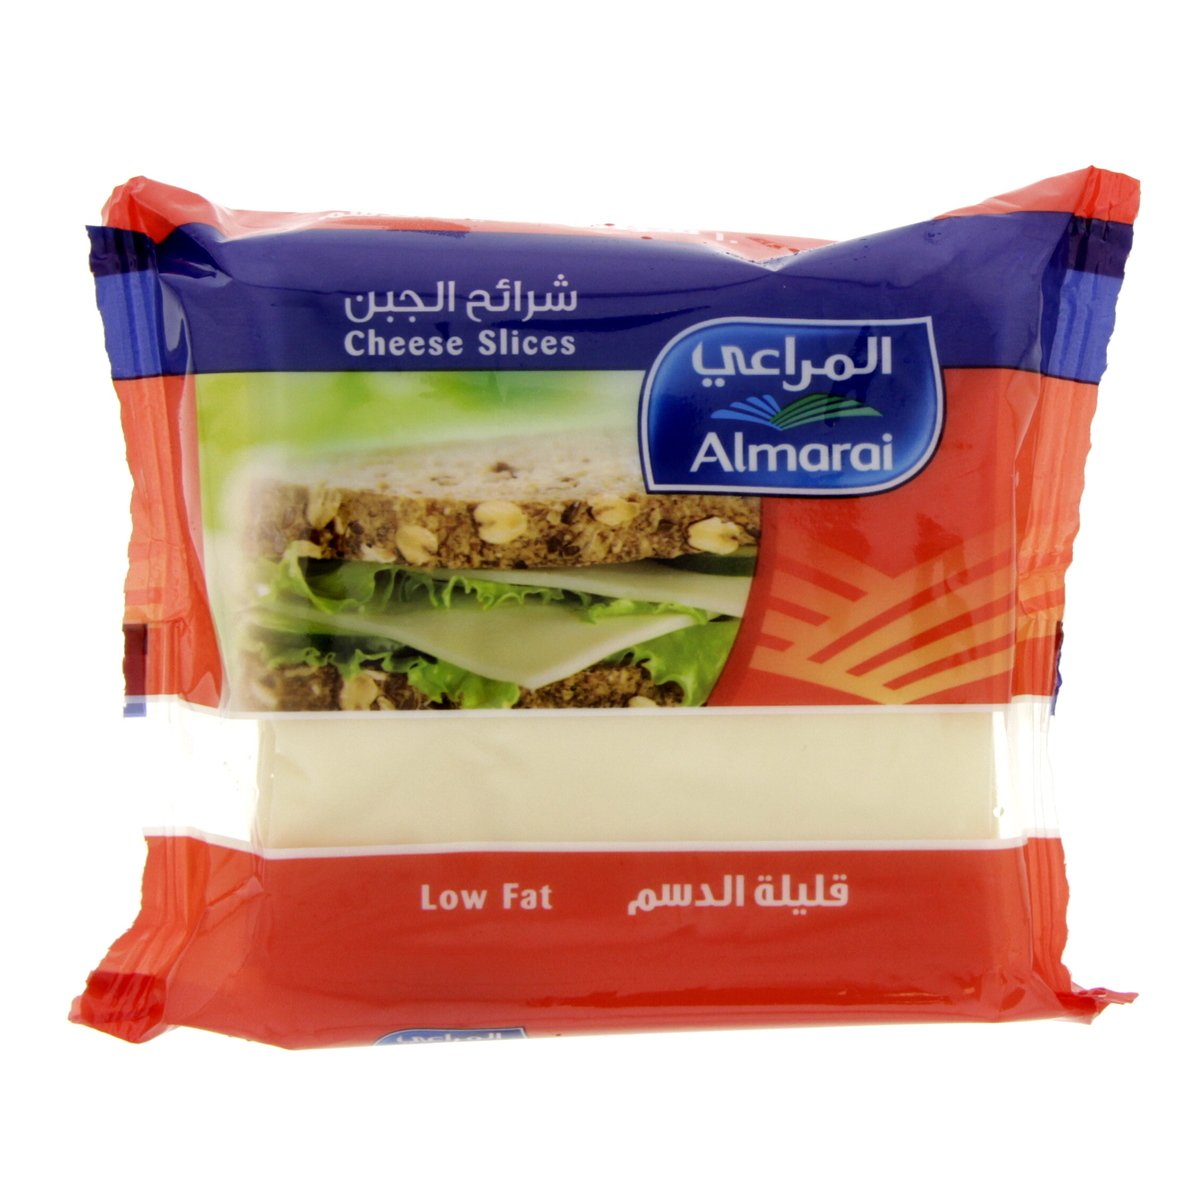 Buy Almarai Low Fat Cheese Slices 200 g Online at Best Price | Sliced Cheese | Lulu UAE in Saudi Arabia